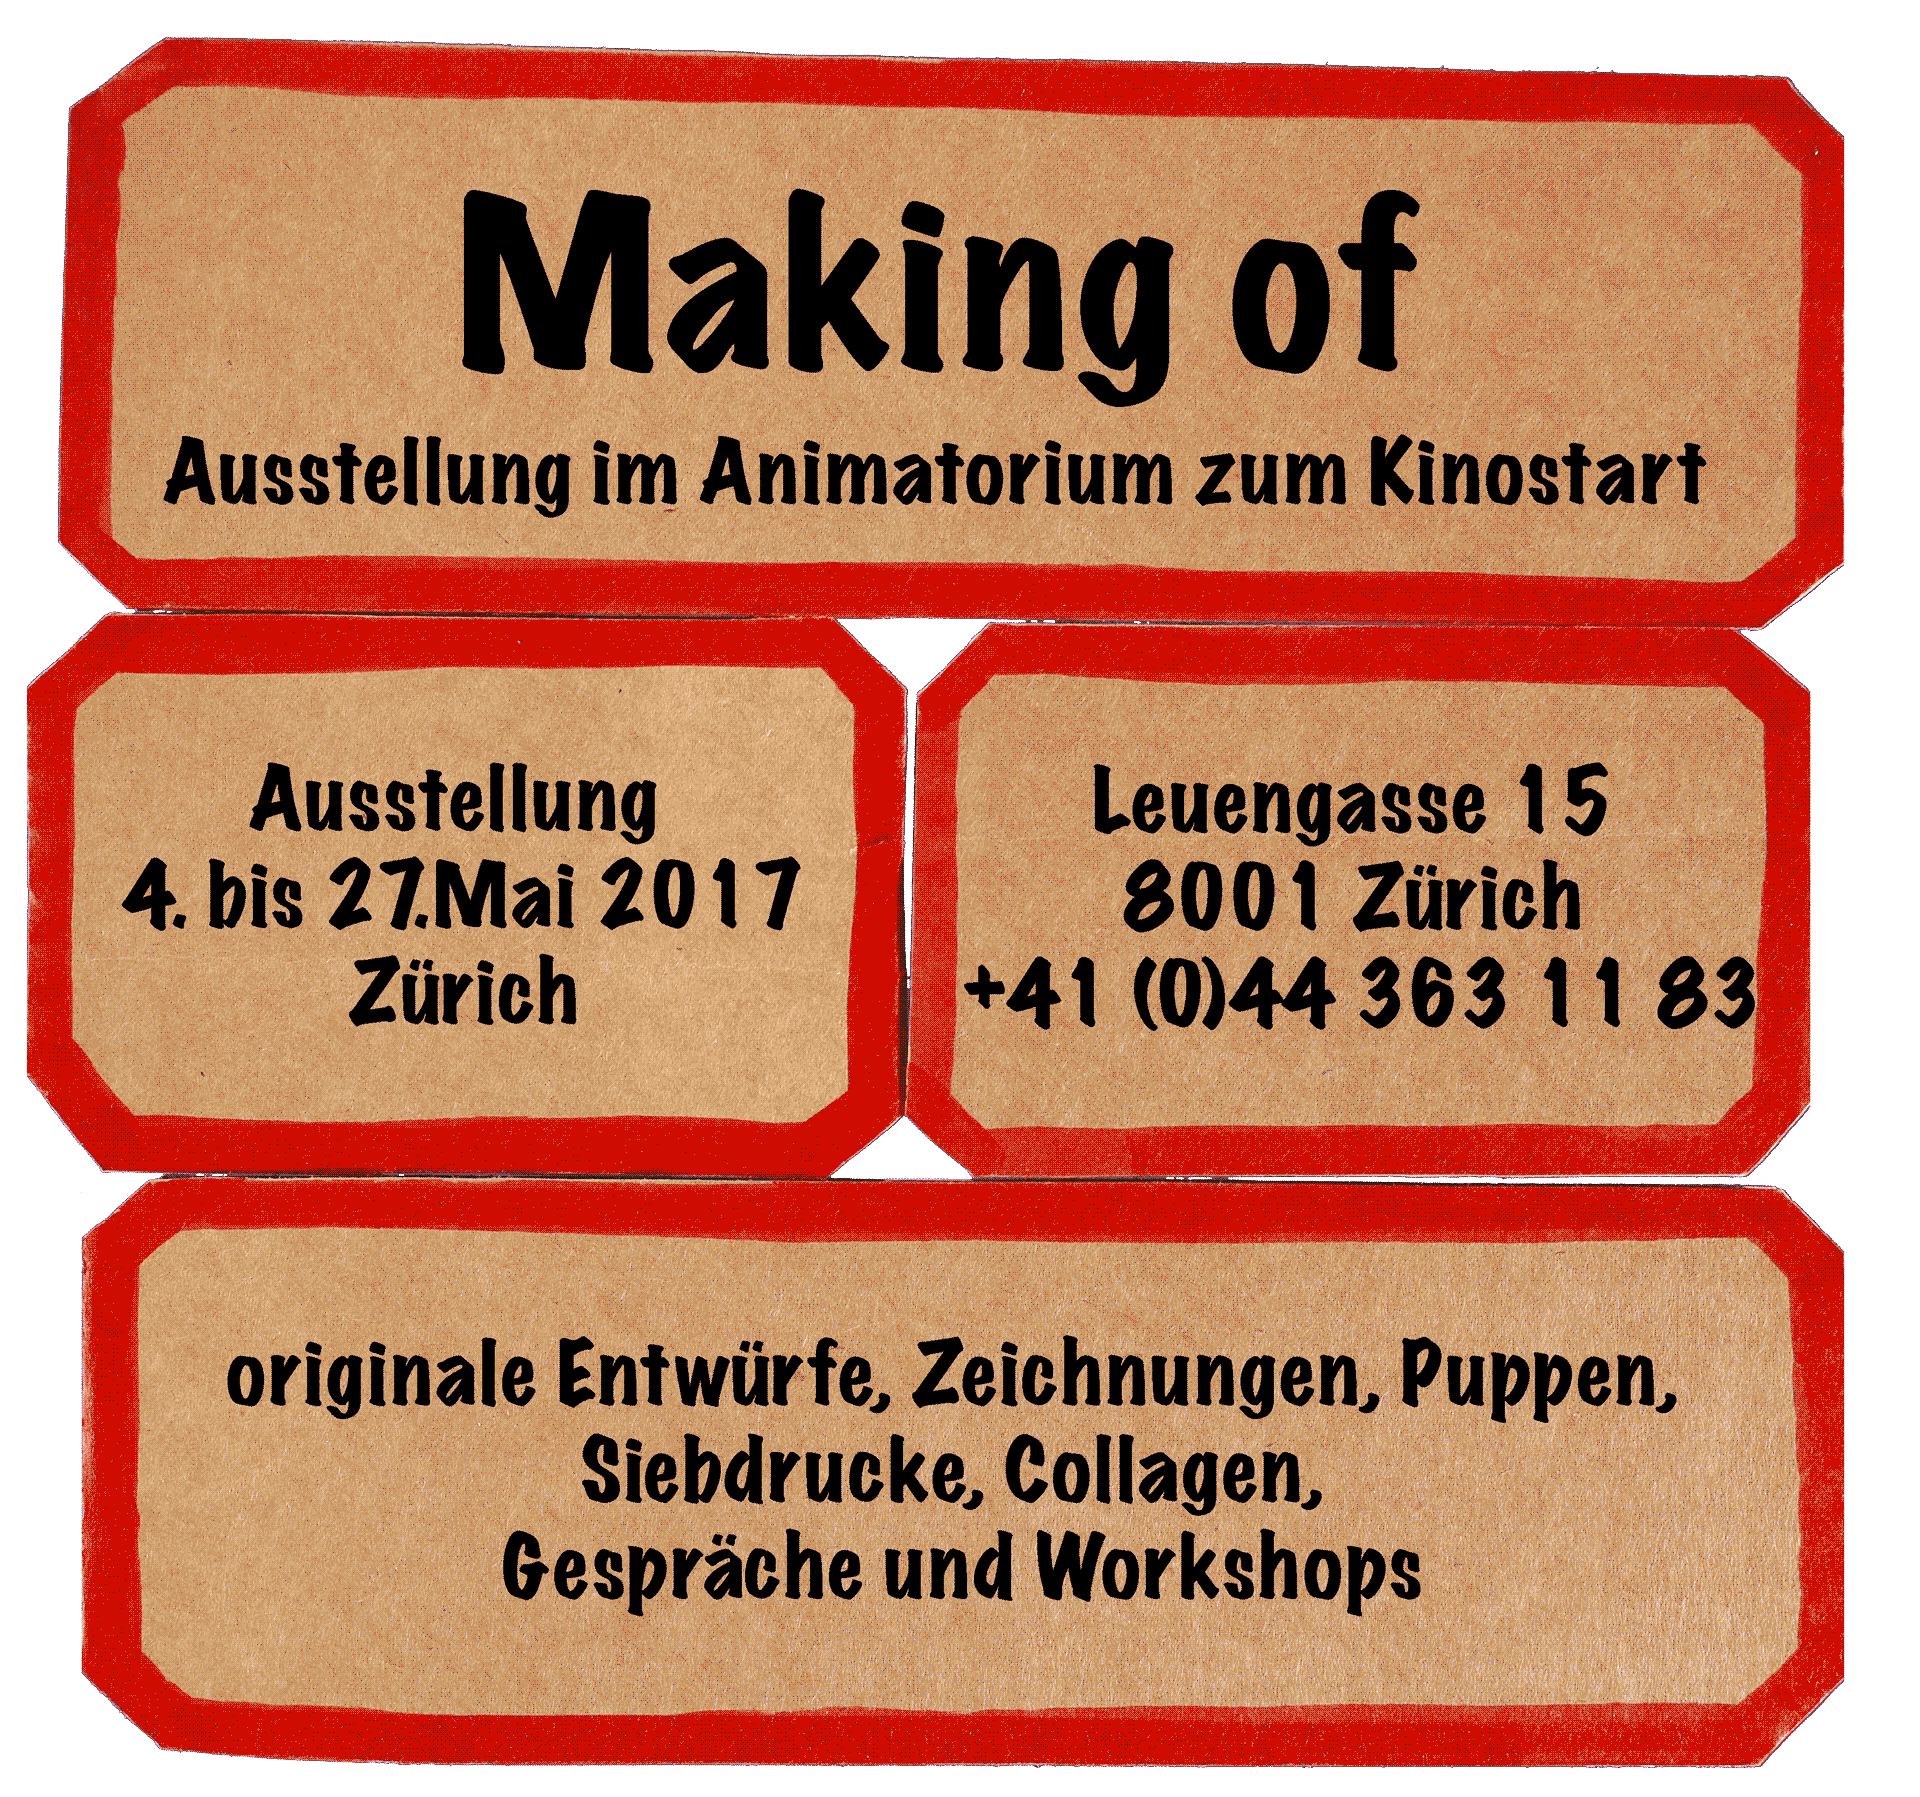 Making of - Ausstellung im Animatorium zum Kinostart / 4. -27.5.2017 in Zürich, Lauengasse 15, +41 (0)44 363 11 83 / originale Entwürfe, Zeichnungen, Siebdrucke, Puppen, Collagen, Gespräche, Workshops